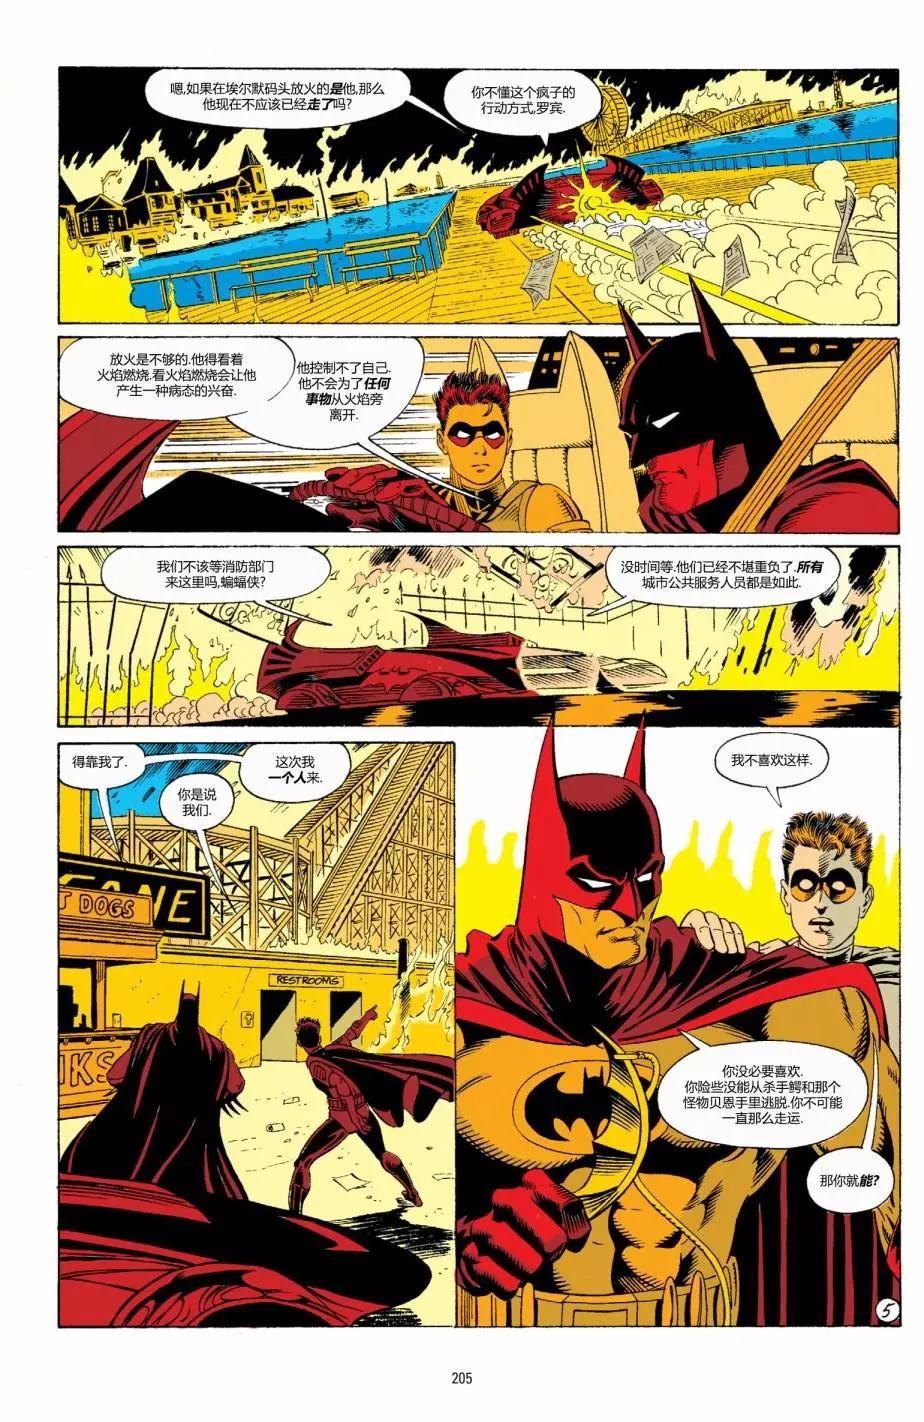 蝙蝠俠：騎士隕落 - 007-偵探漫畫#661 - 1